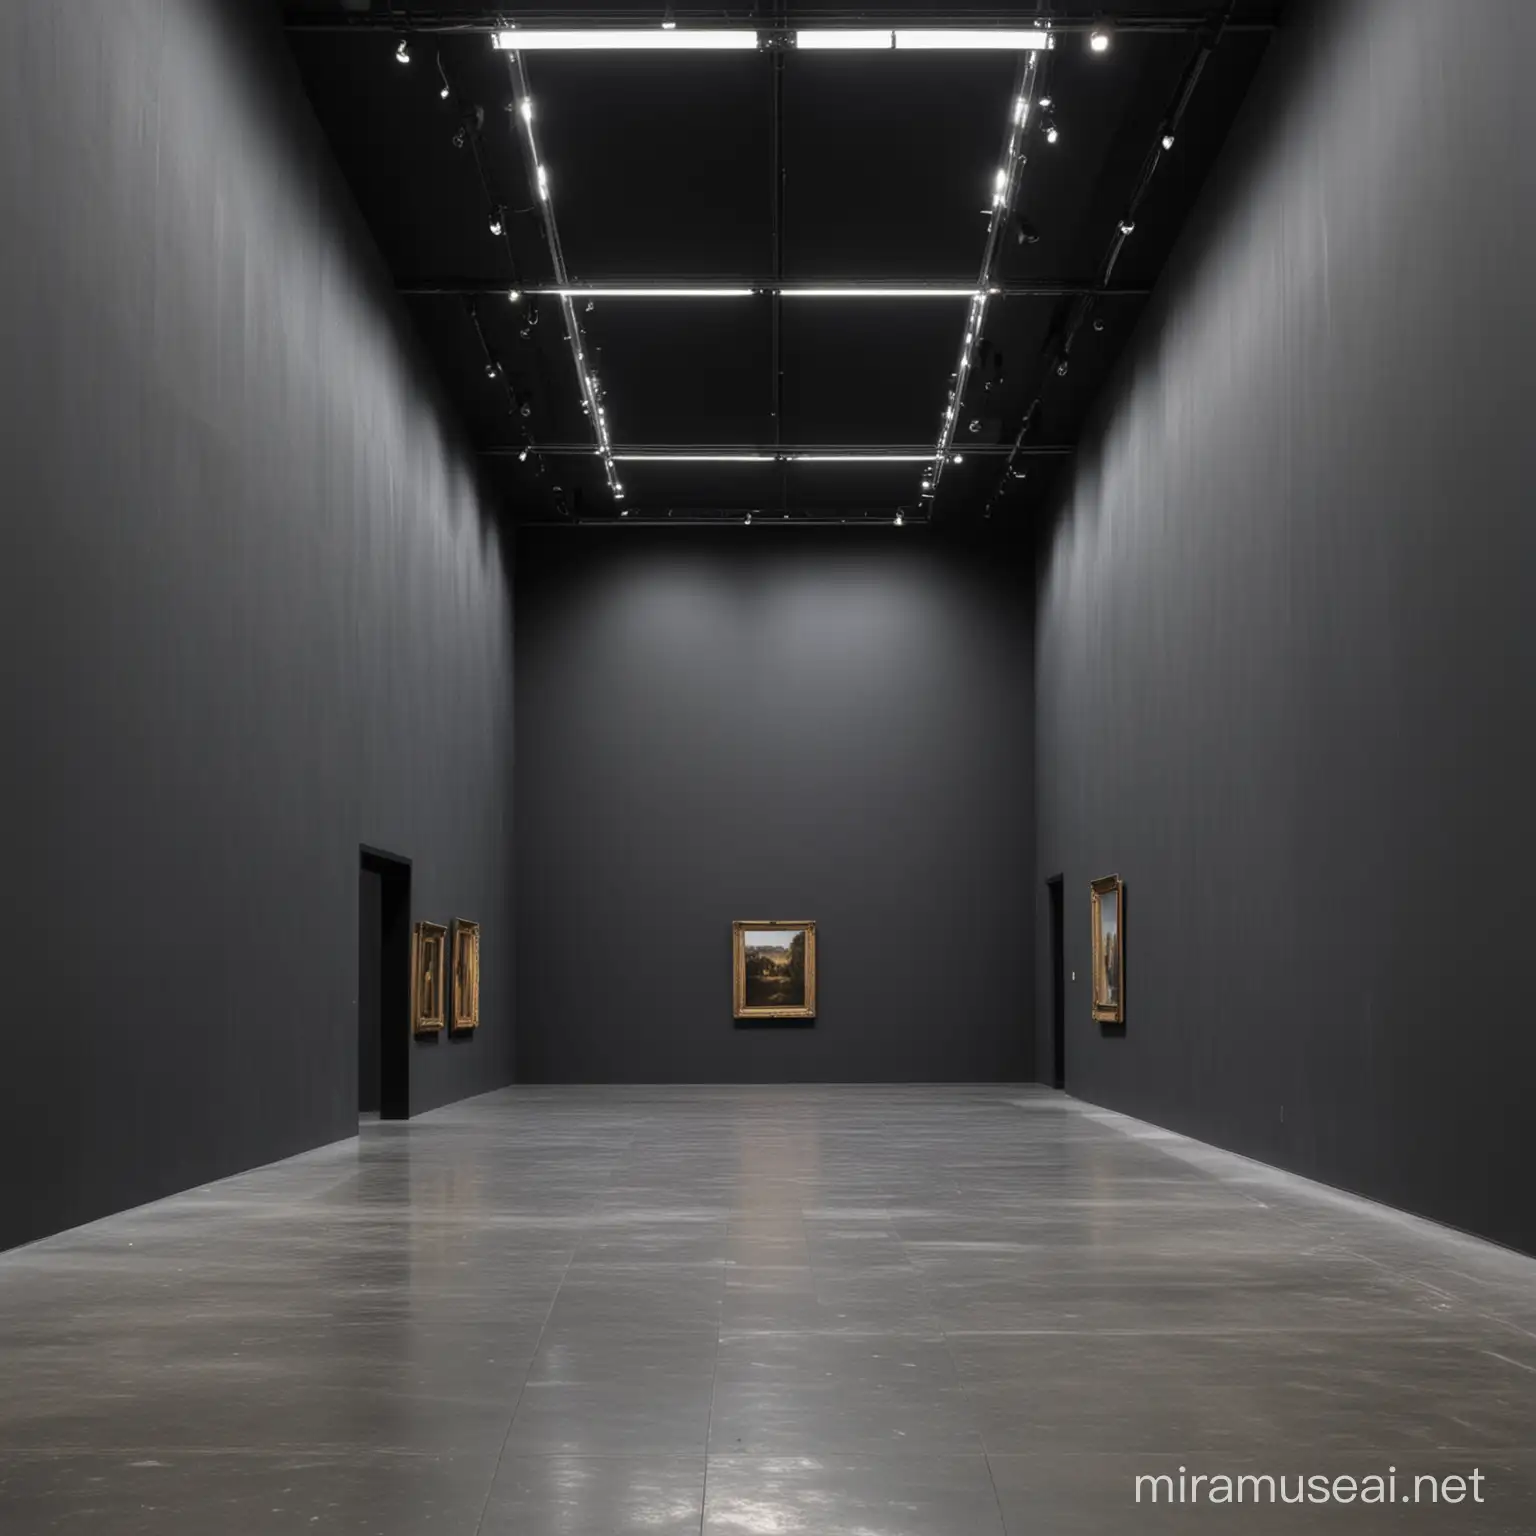 Empty Museum Exhibition Space with Dark Grey Walls